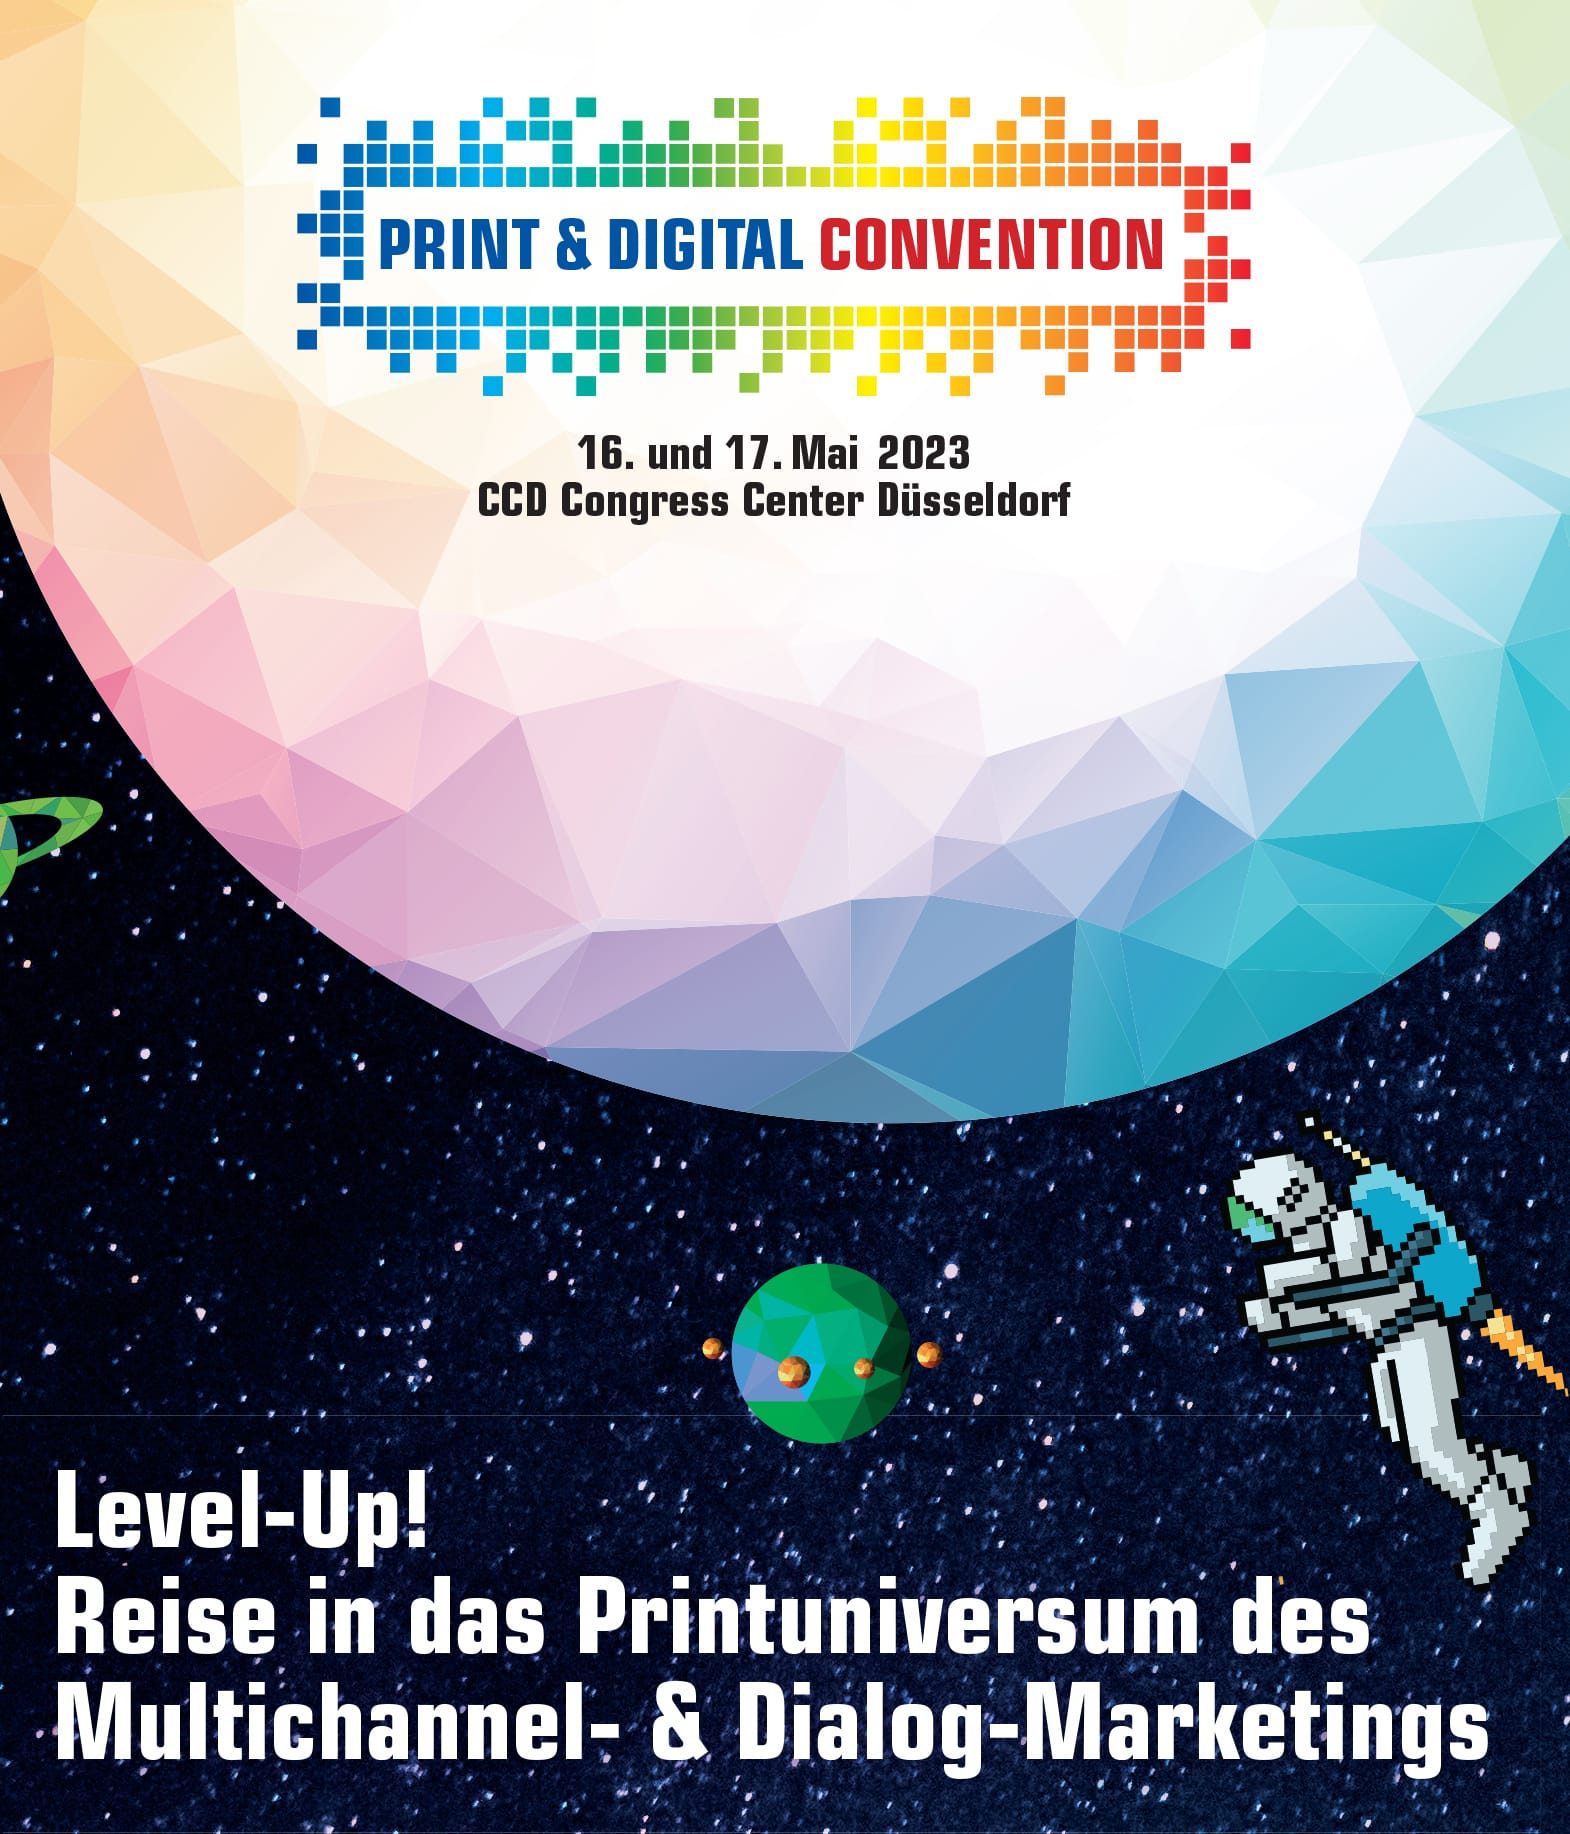 Die Print & Digital Convention versteht sich nicht nur als eine Kongressmesse, sondern auch als ein Erlebnis-, Content- und Mitmachformat.